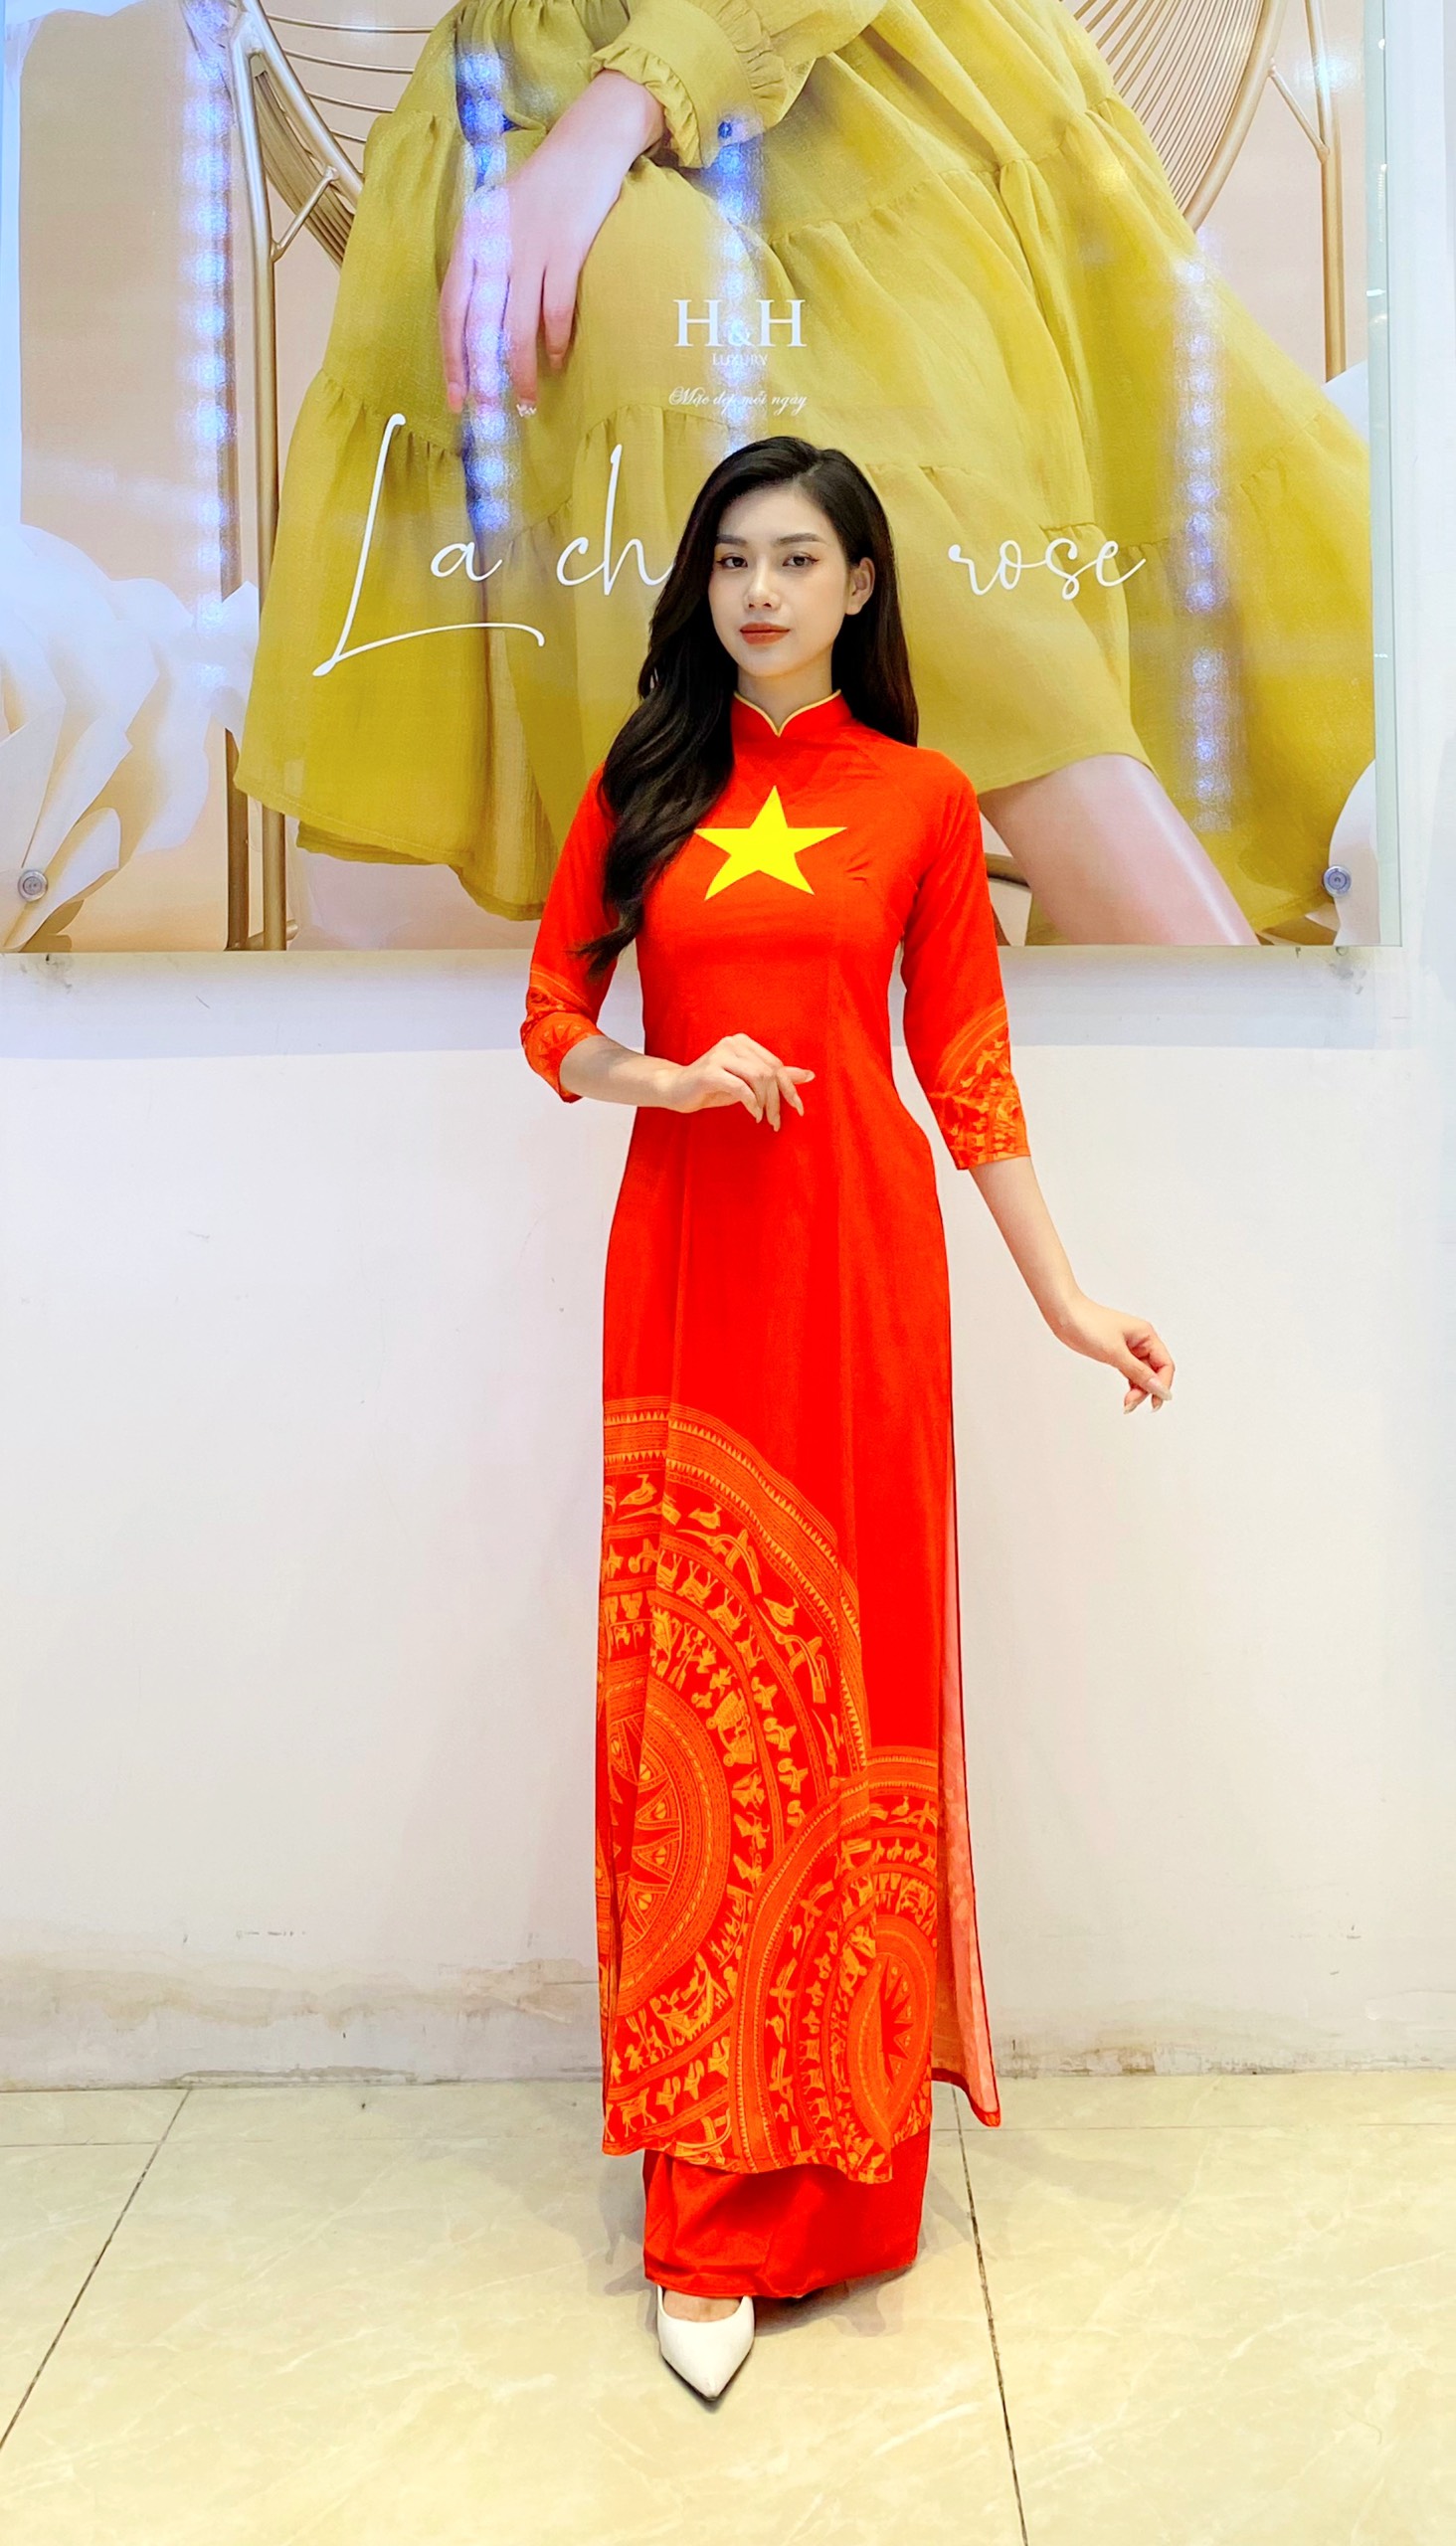 Áo dài lụa là biểu tượng được trân trọng tại Việt Nam từ lâu. Một chiếc áo dài lụa sẽ tôn lên vẻ đẹp sang trọng và quý phái của người phụ nữ Việt Nam. Những hình ảnh áo dài lụa trong các bộ sưu tập mới nhất tràn đầy màu sắc sẽ khiến bạn nhận ra ý nghĩa văn hóa sâu sắc của trang phục này.